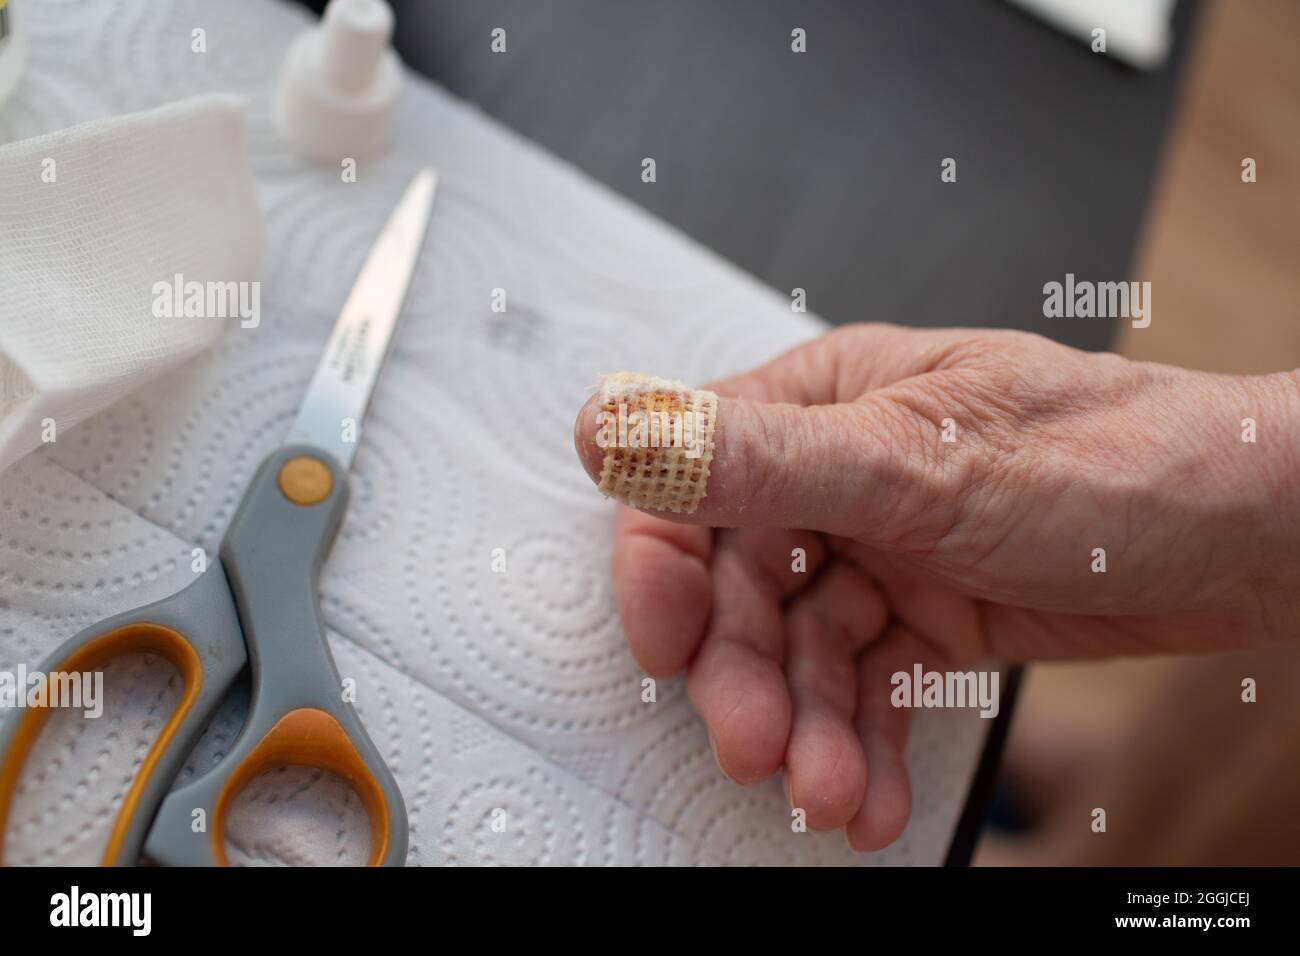 Feutre blanc sur la main doigt pointe blessé pour perdre le traitement des ongles et ongles retirés Banque D'Images